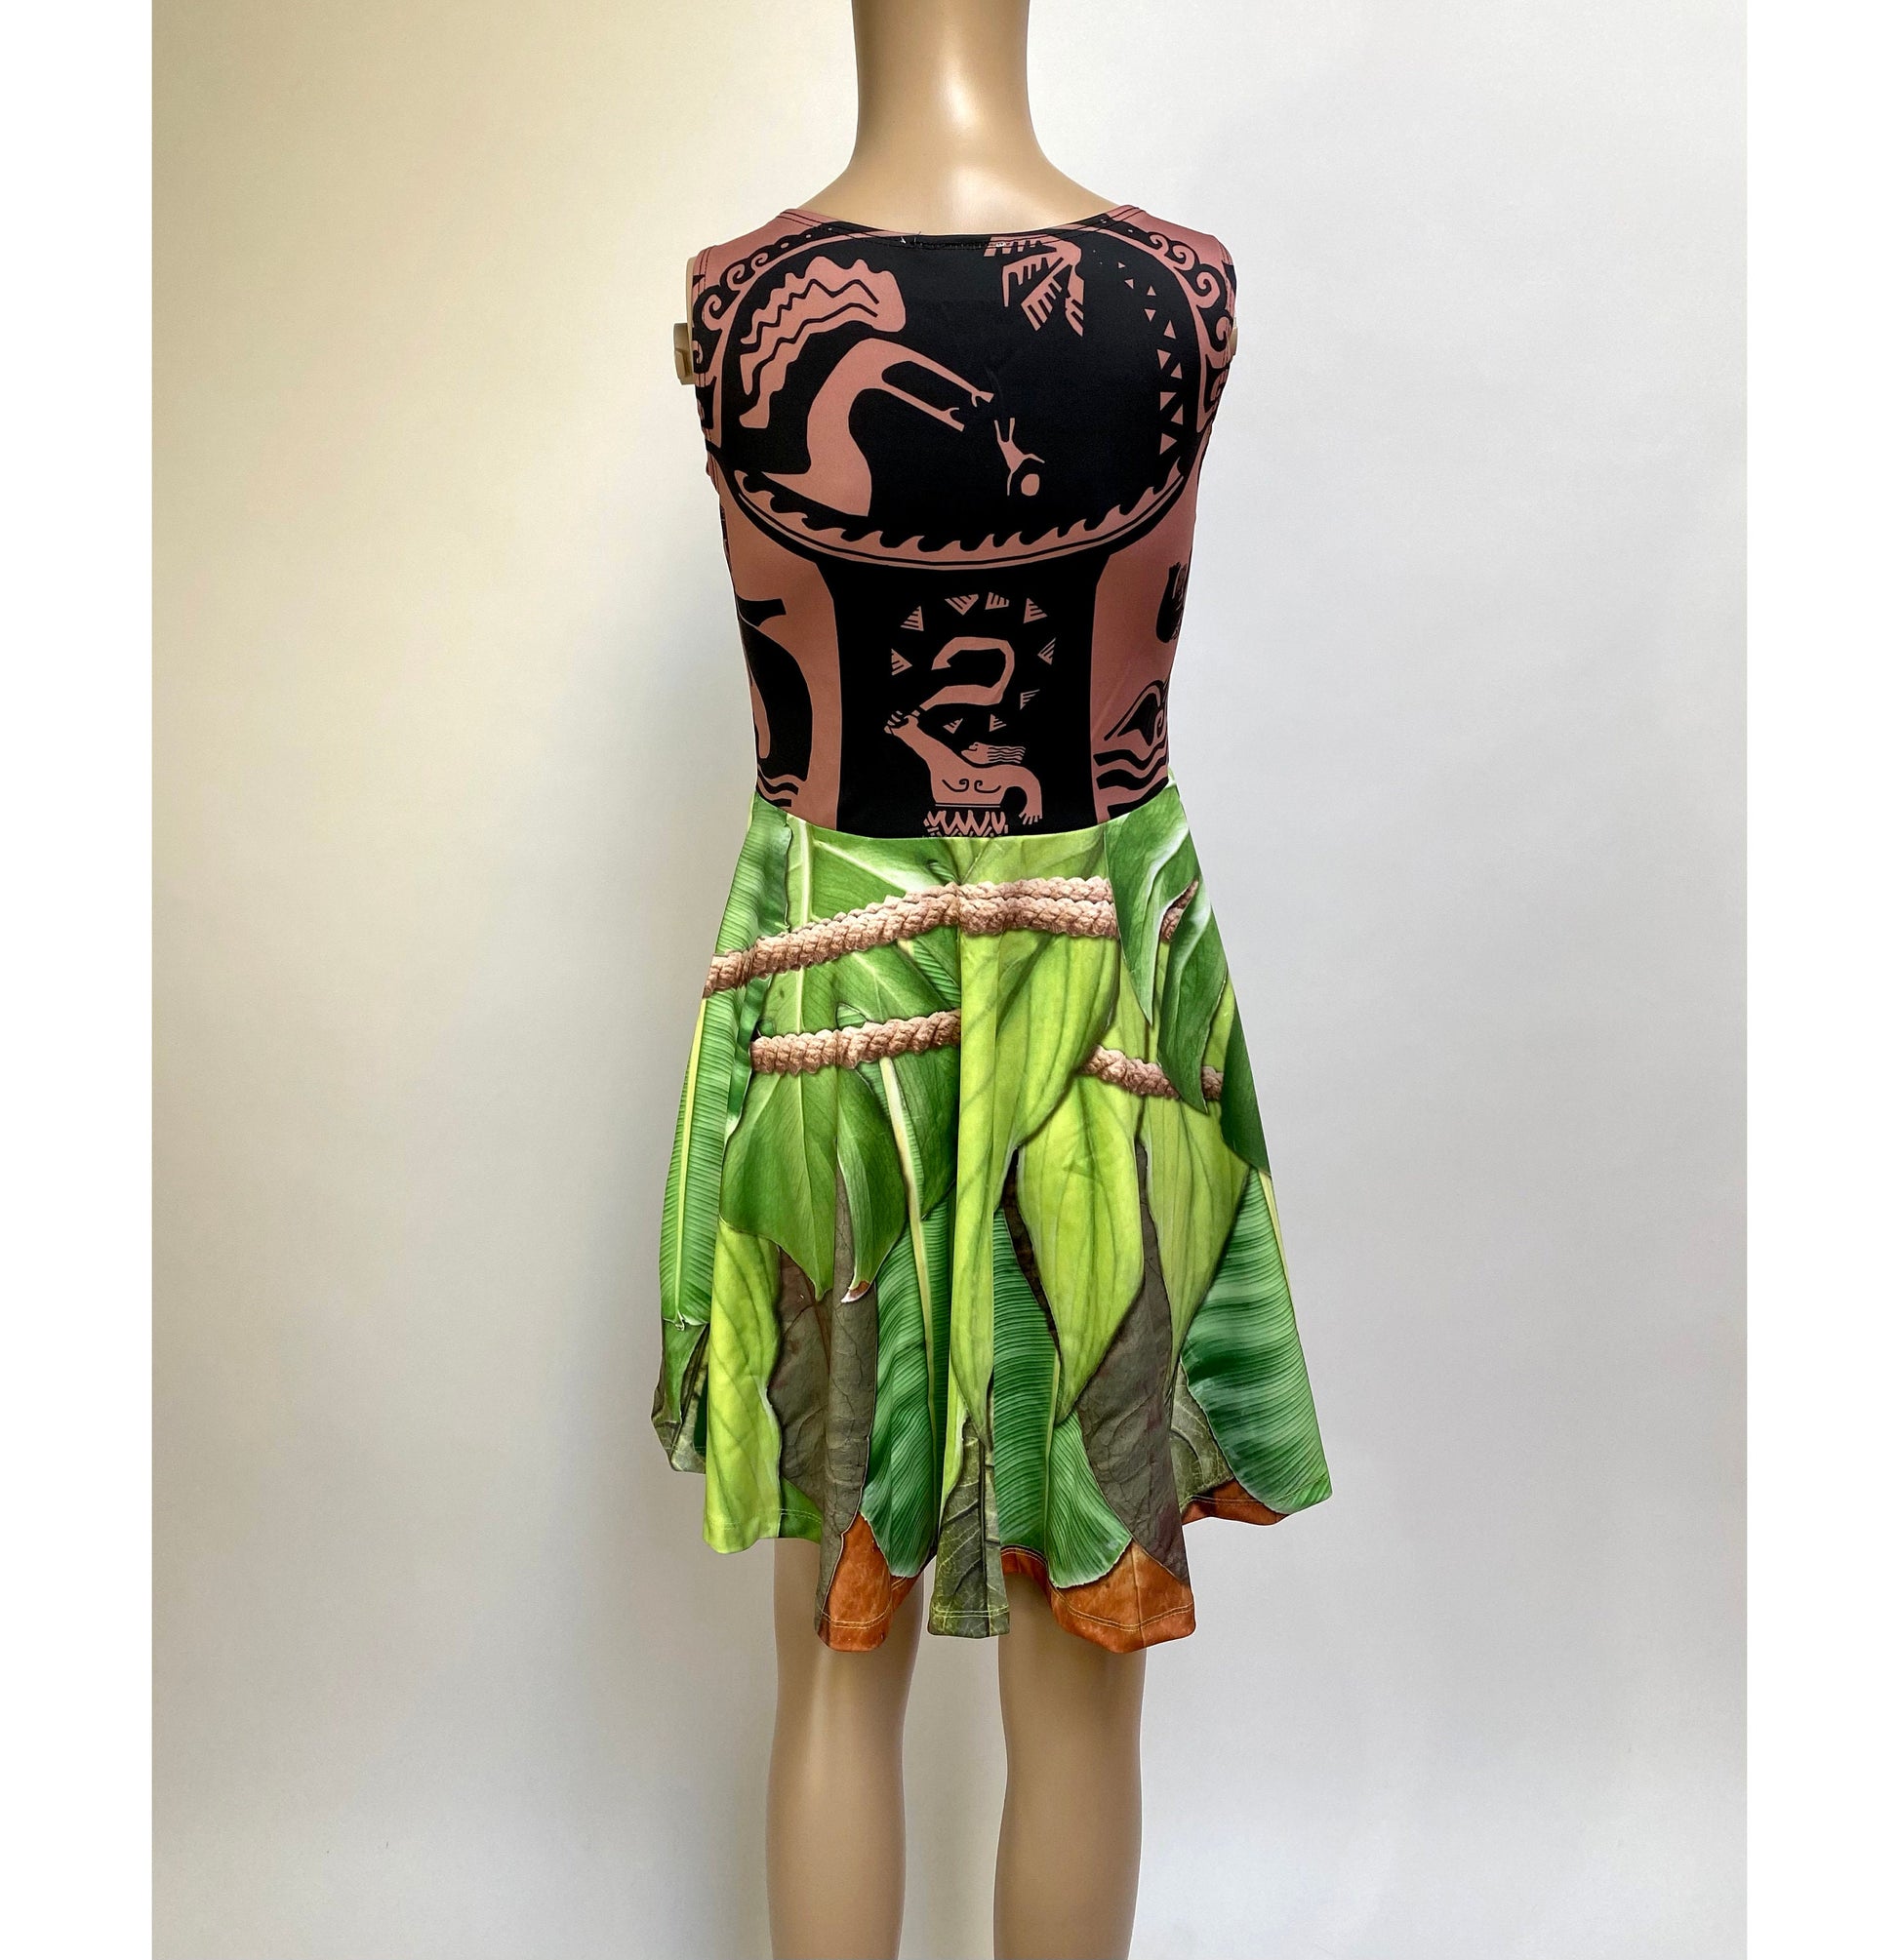 RUSH ORDER: Maui Moana Inspired Skater Dress